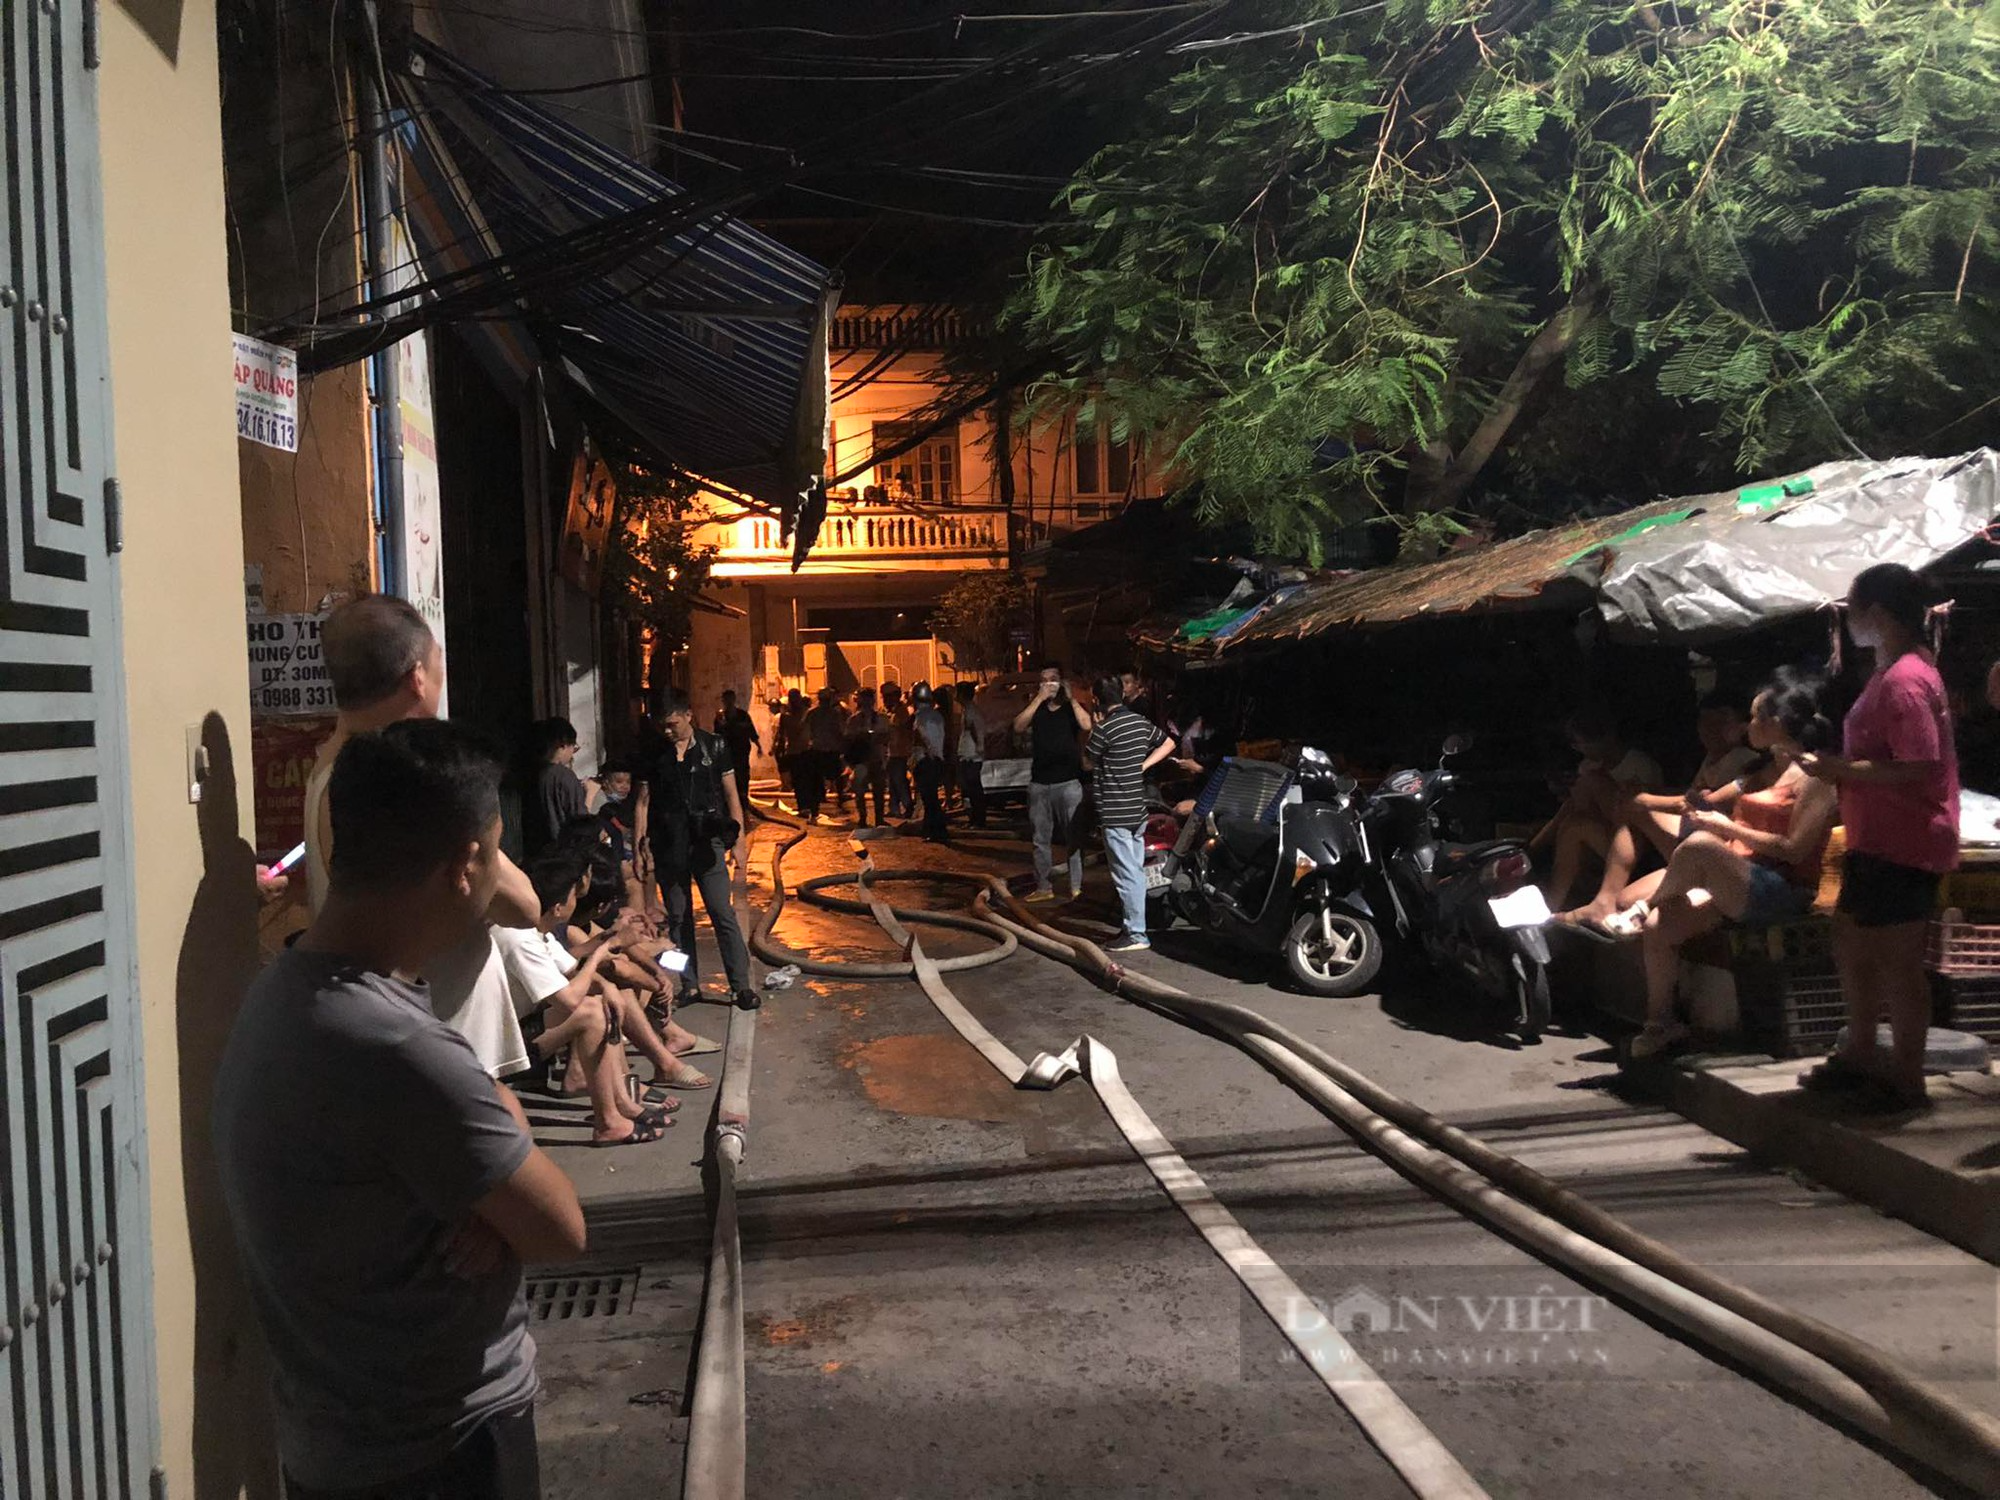 CẬP NHẬT: Cháy chung cư mini trong đêm ở Hà Nội, nhiều người mắc kẹt - Ảnh 1.